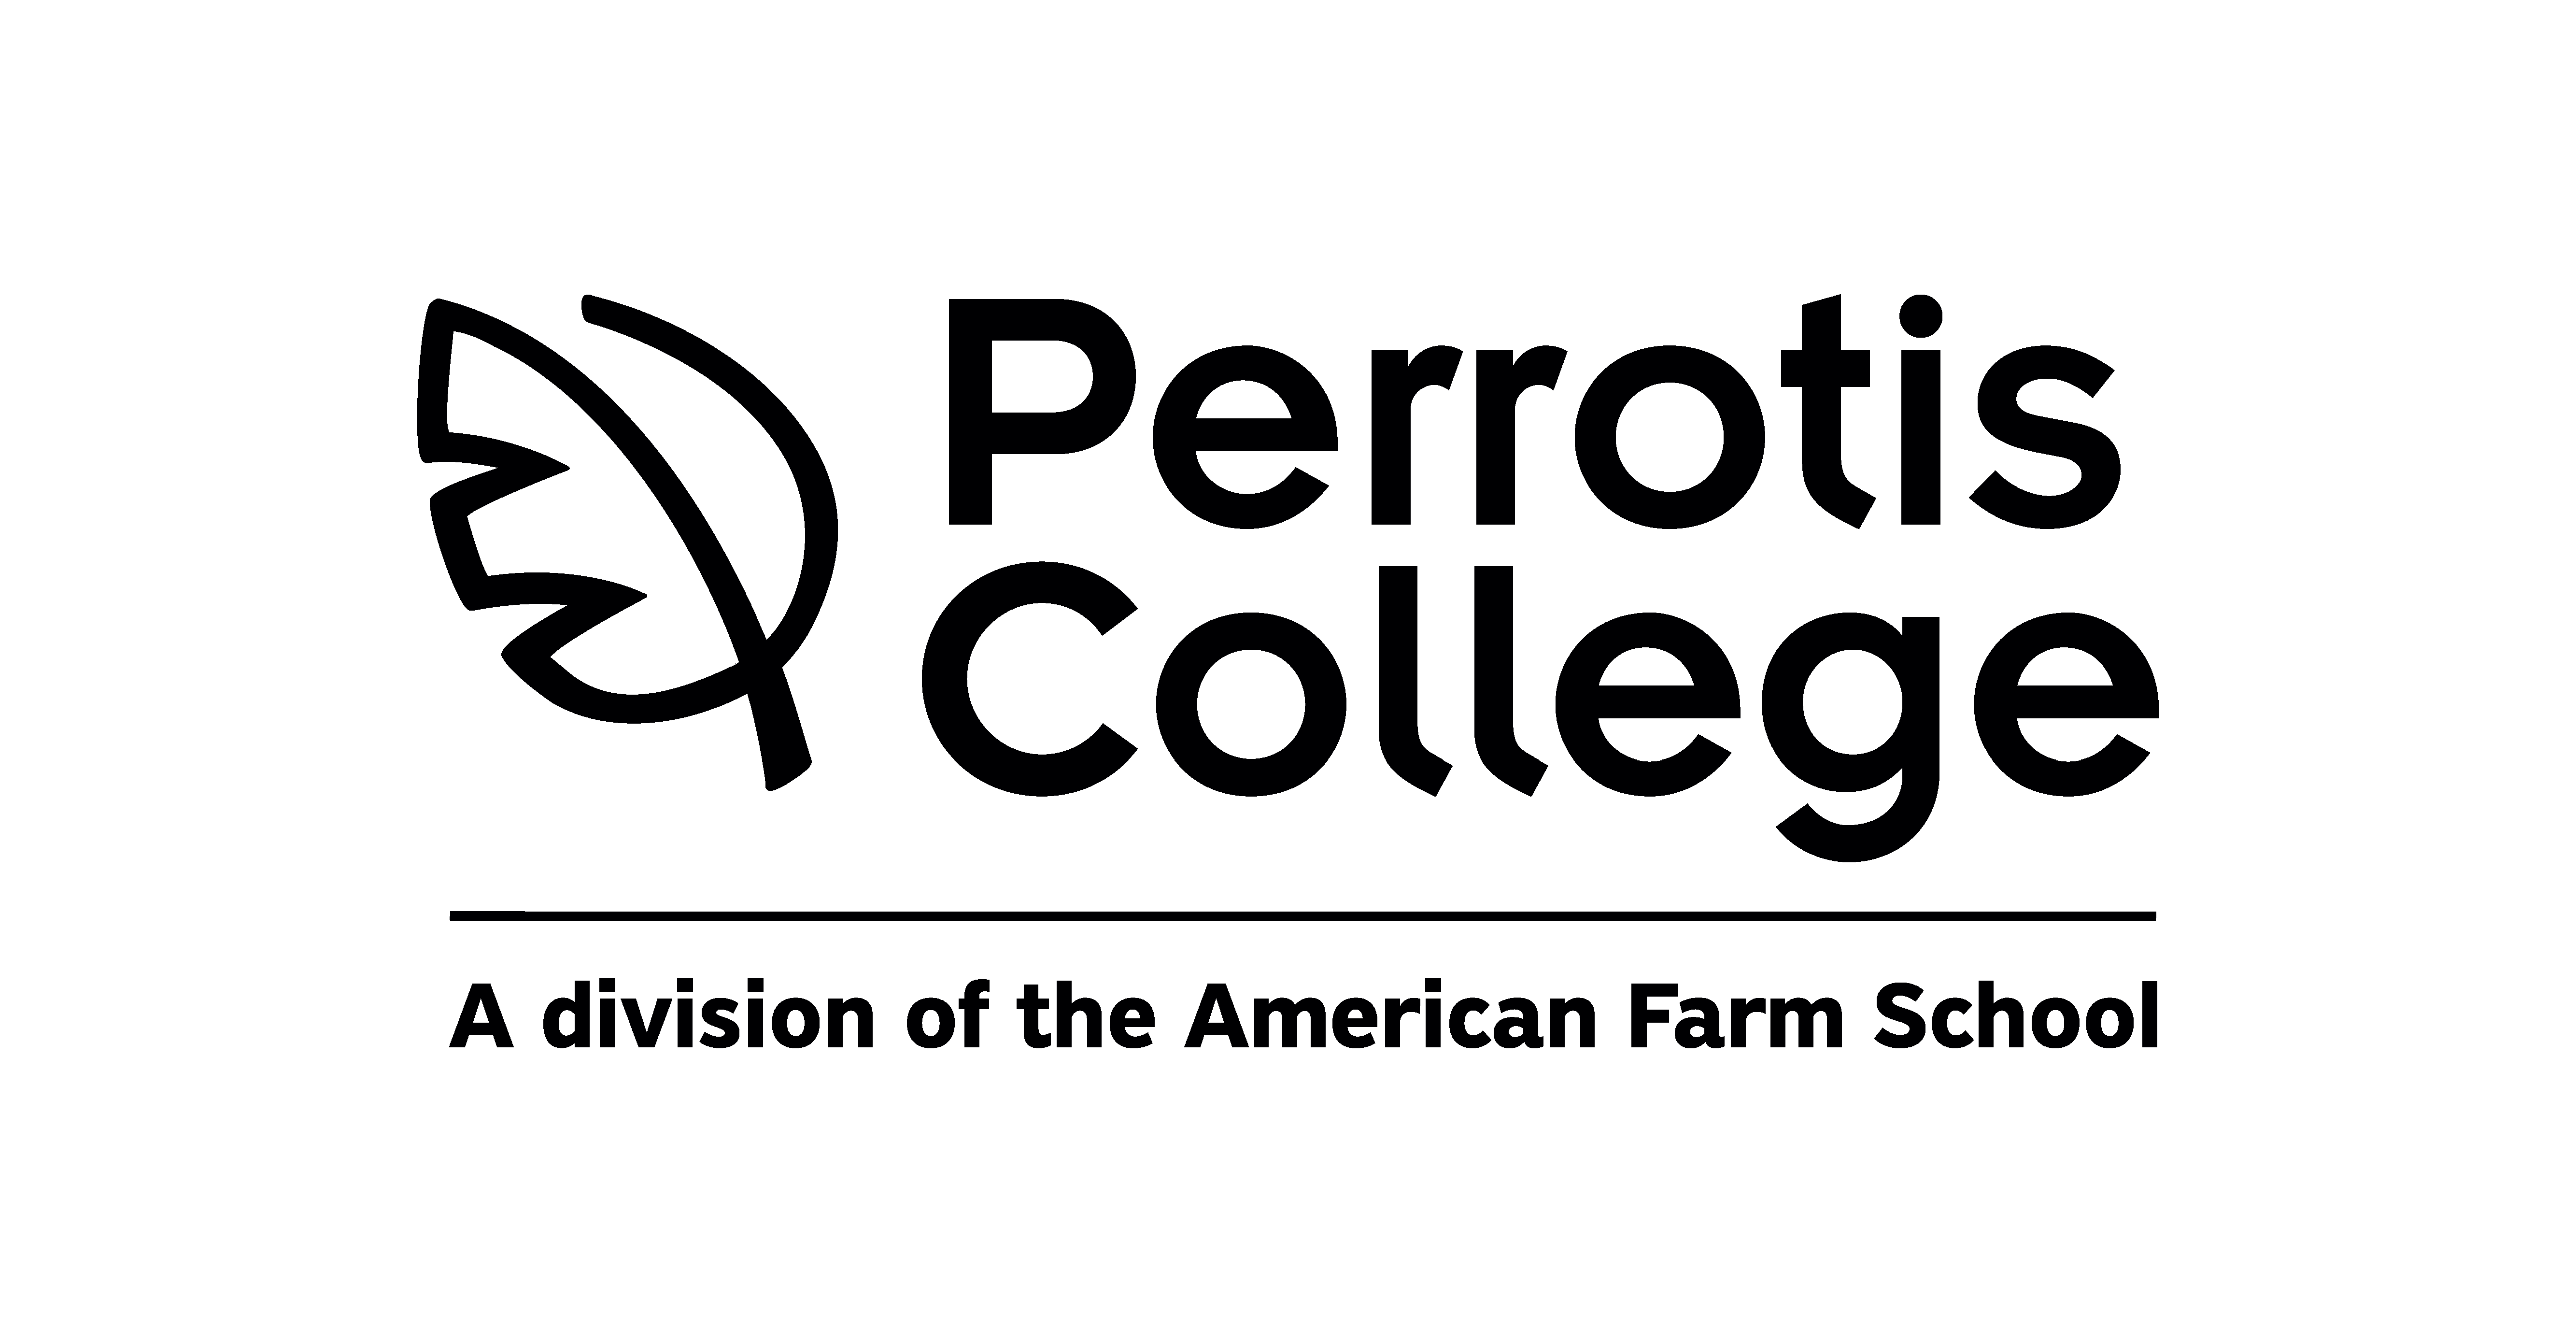 Perrotis College